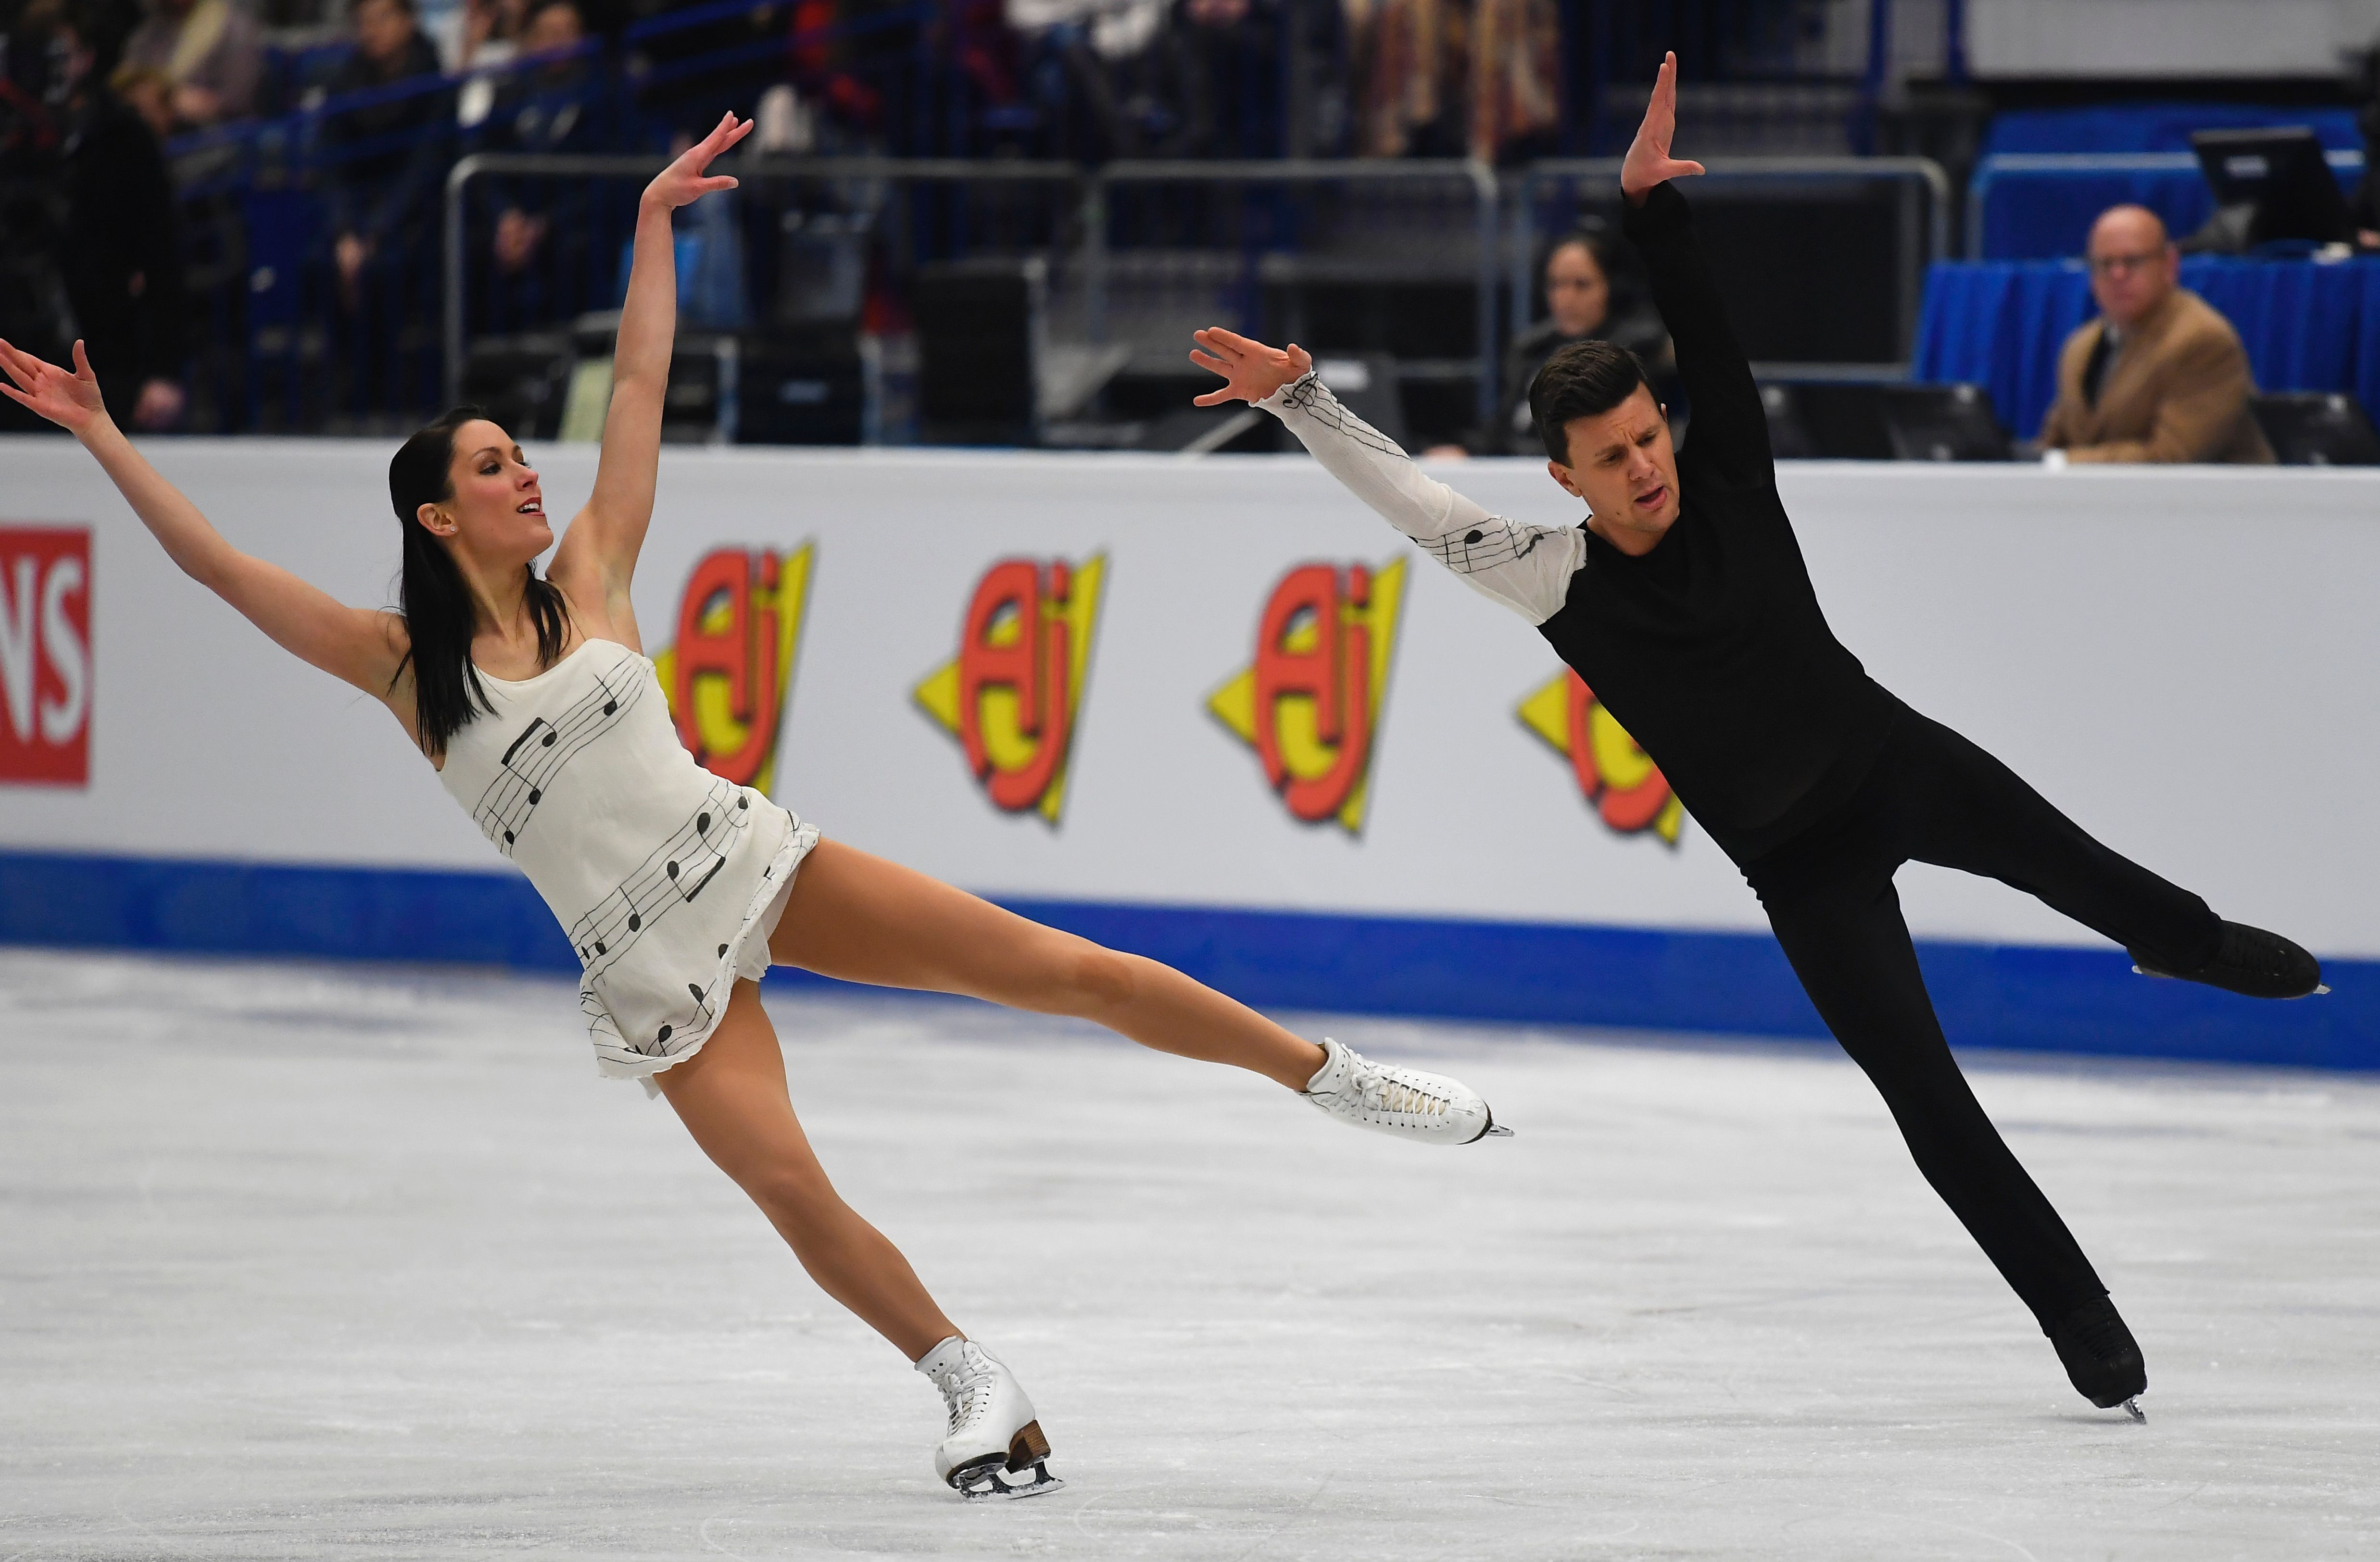 بطولة كأس الأمم الأوروبية 2017 للرقص الحر على الجليد (22)